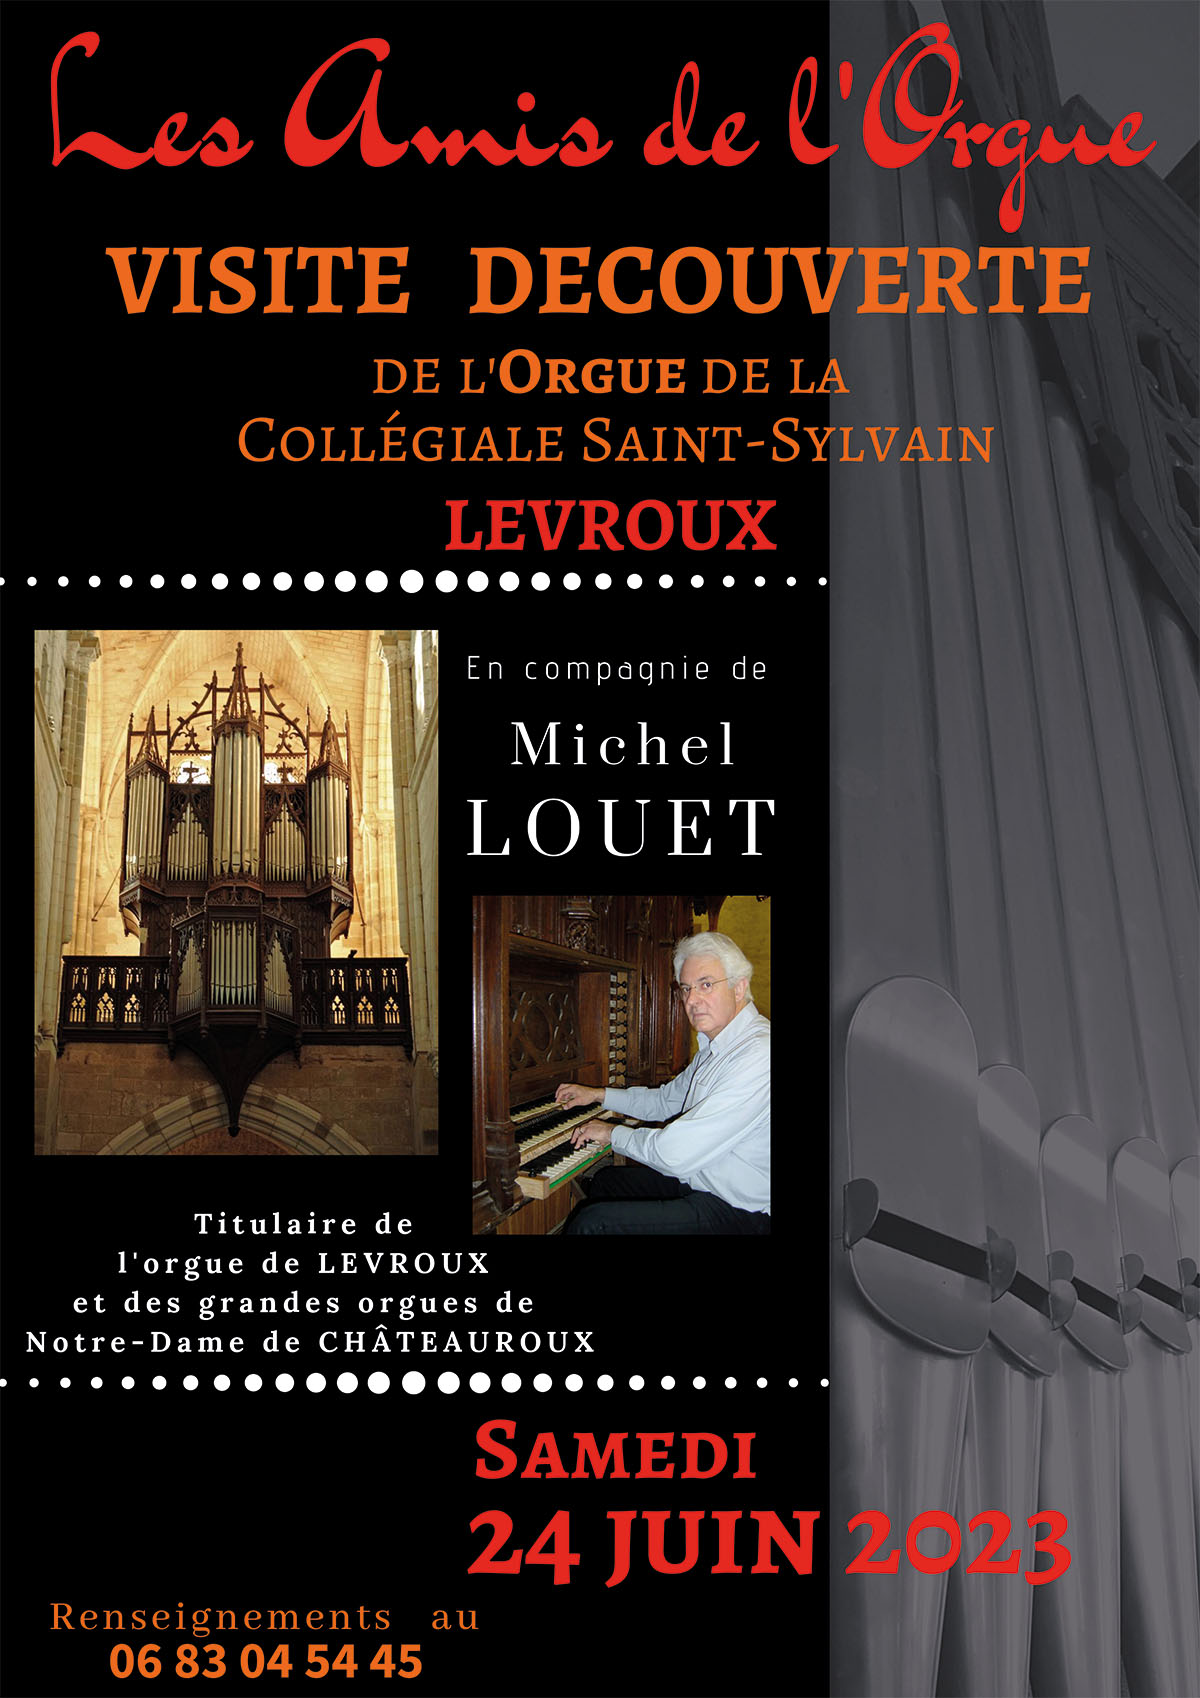 Samedi 24 juin 2023 visite et présentation de l’orgue de Levroux